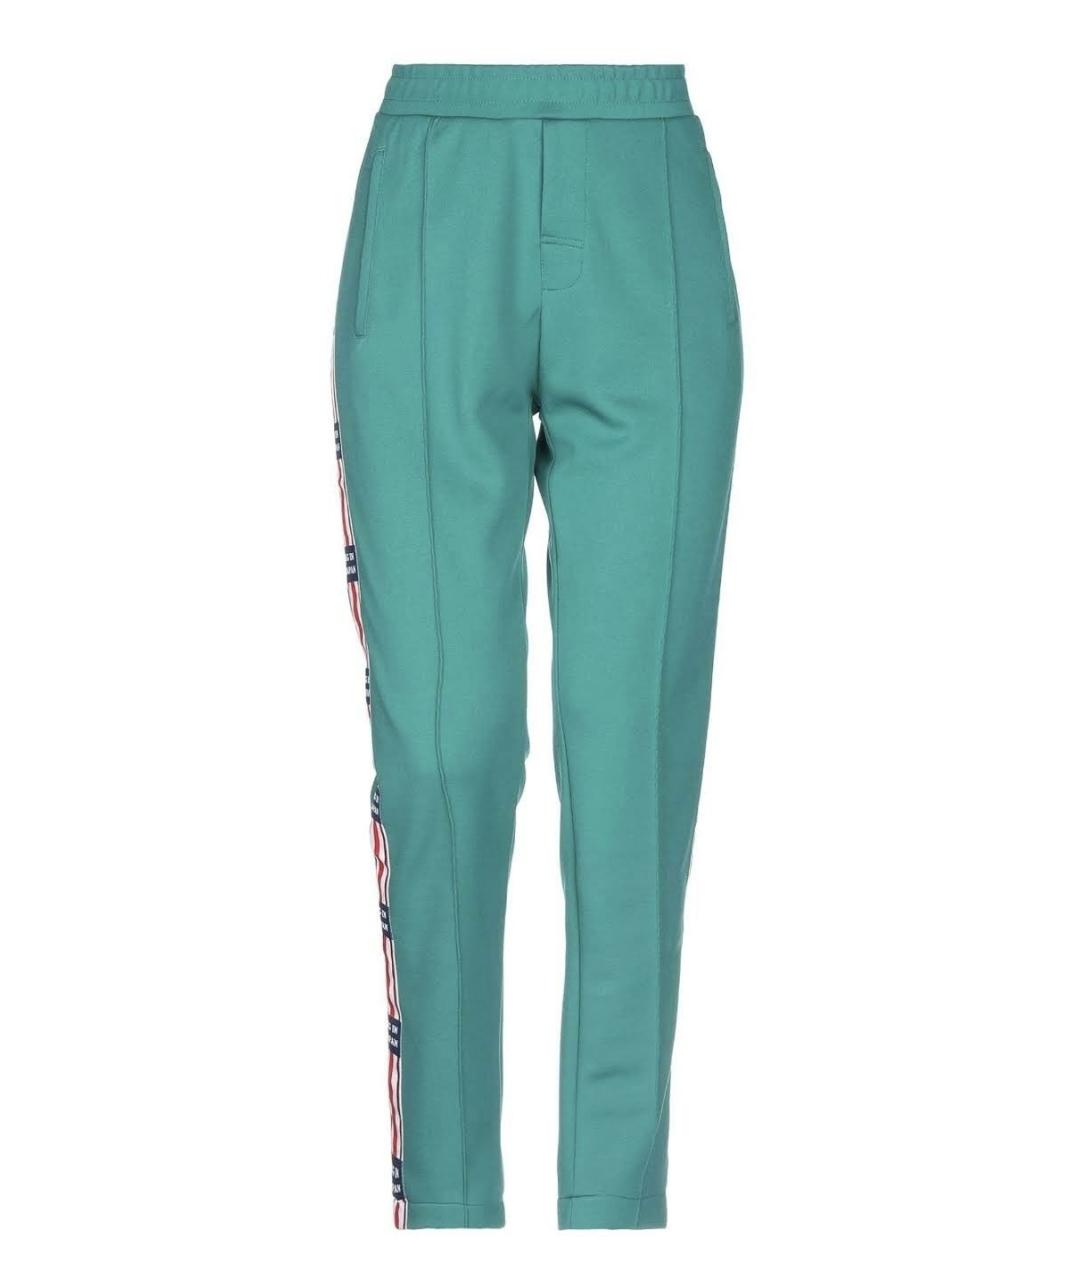 ZOE KARSSEN Зеленые полиэстеровые спортивные брюки и шорты, фото 1